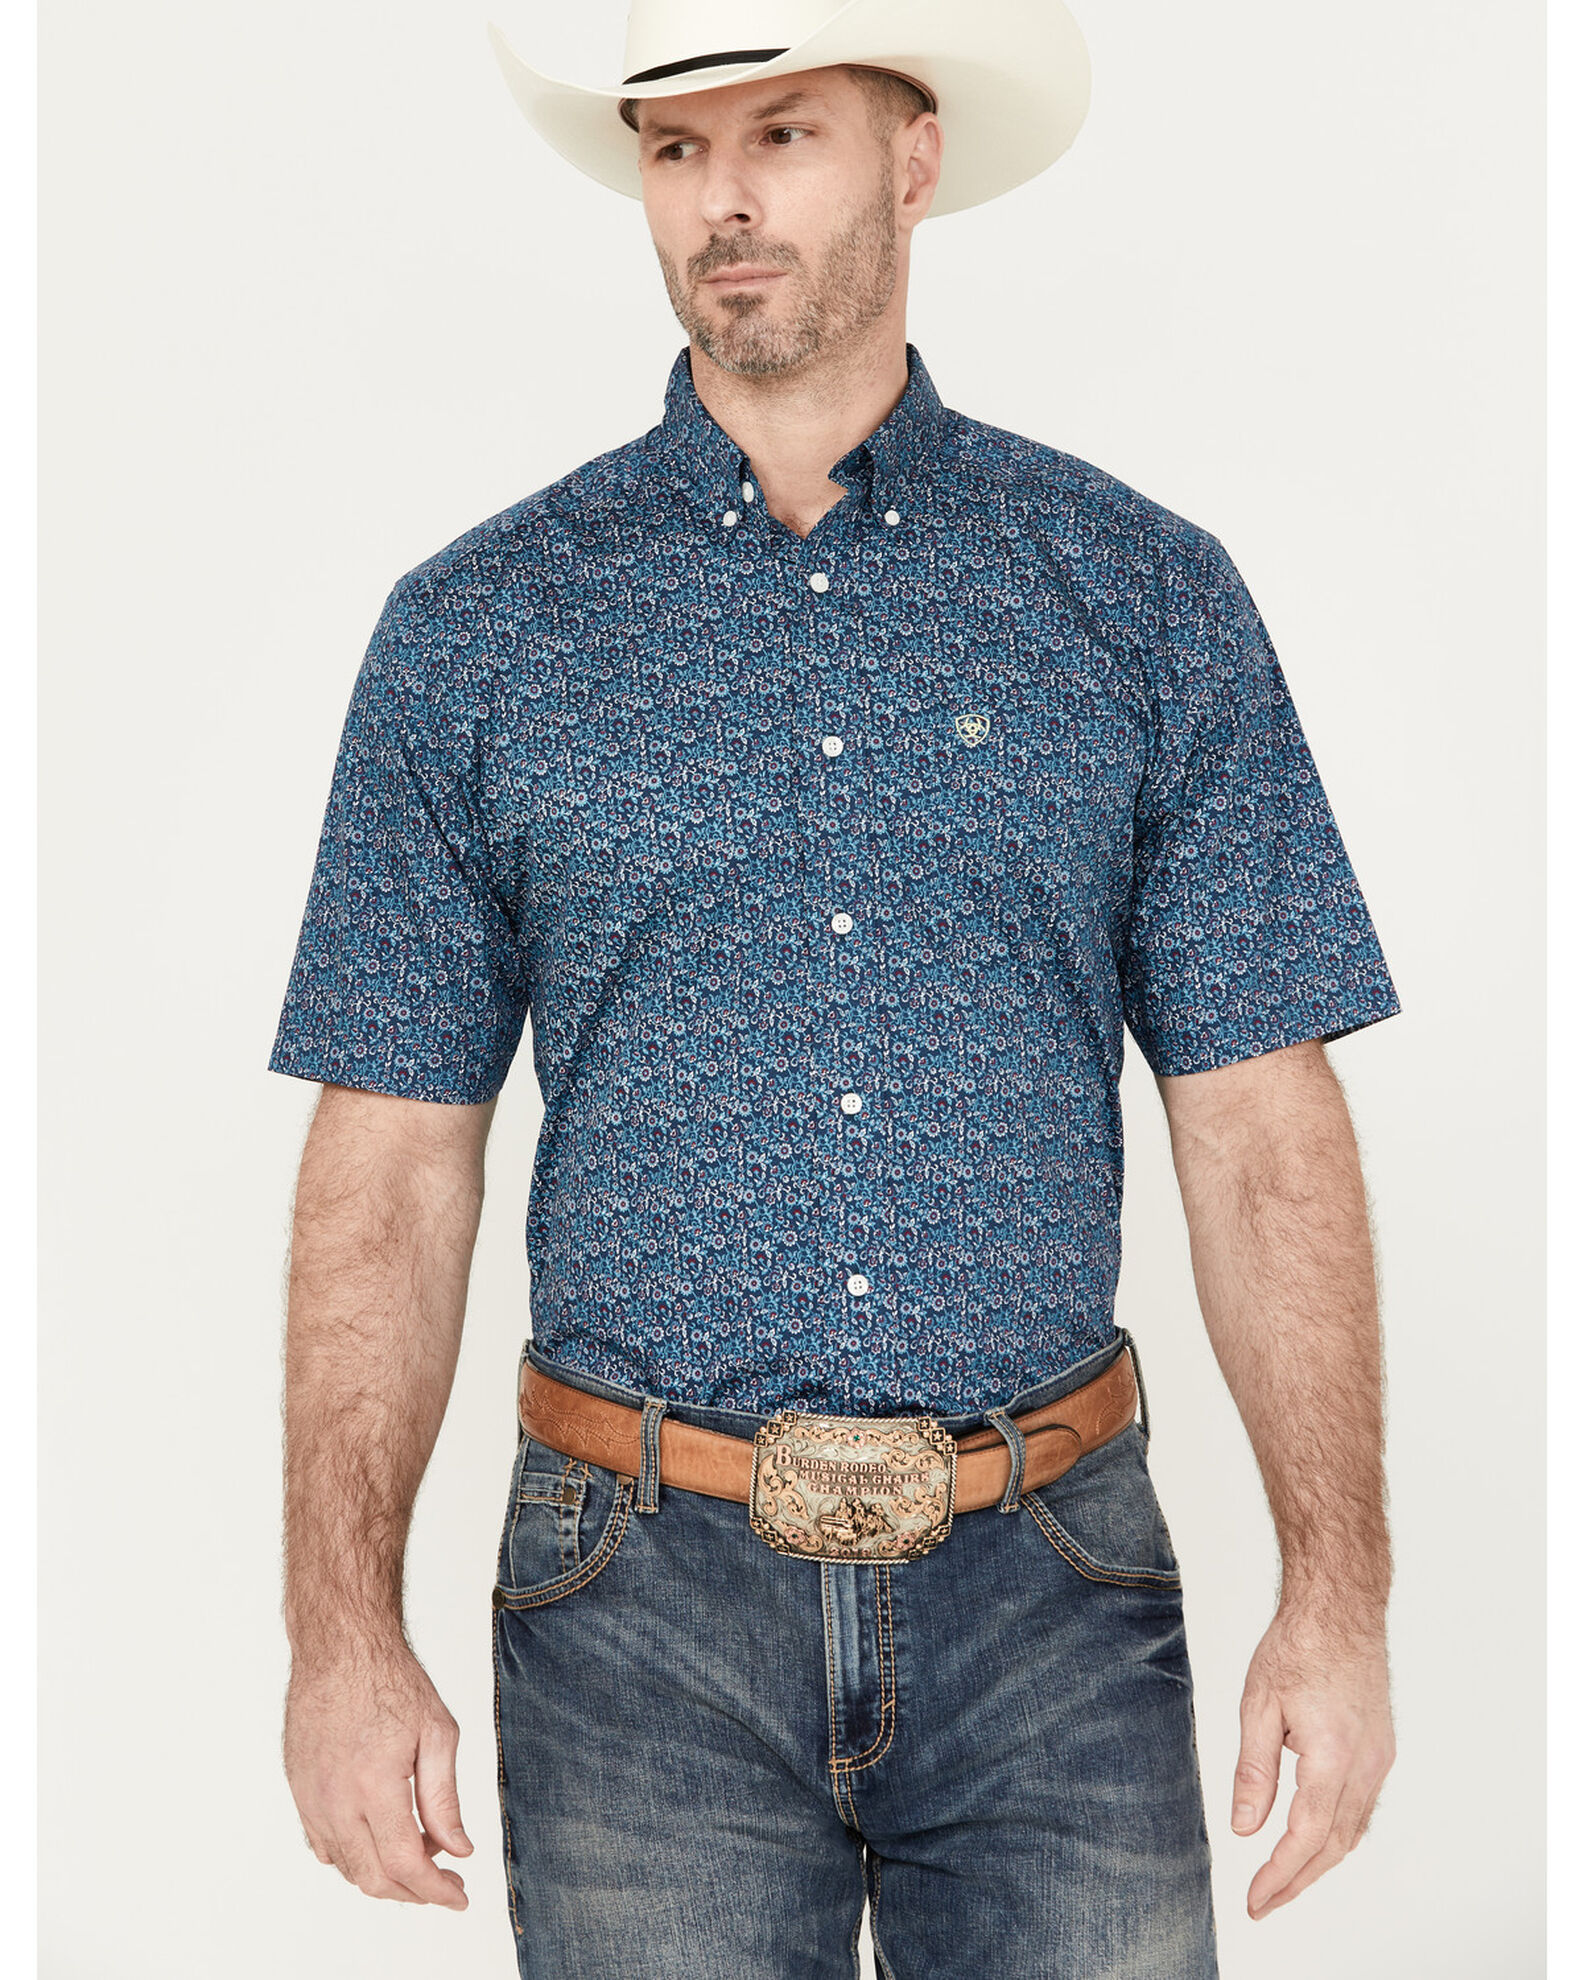 Men's Short Sleeve Western Shirt